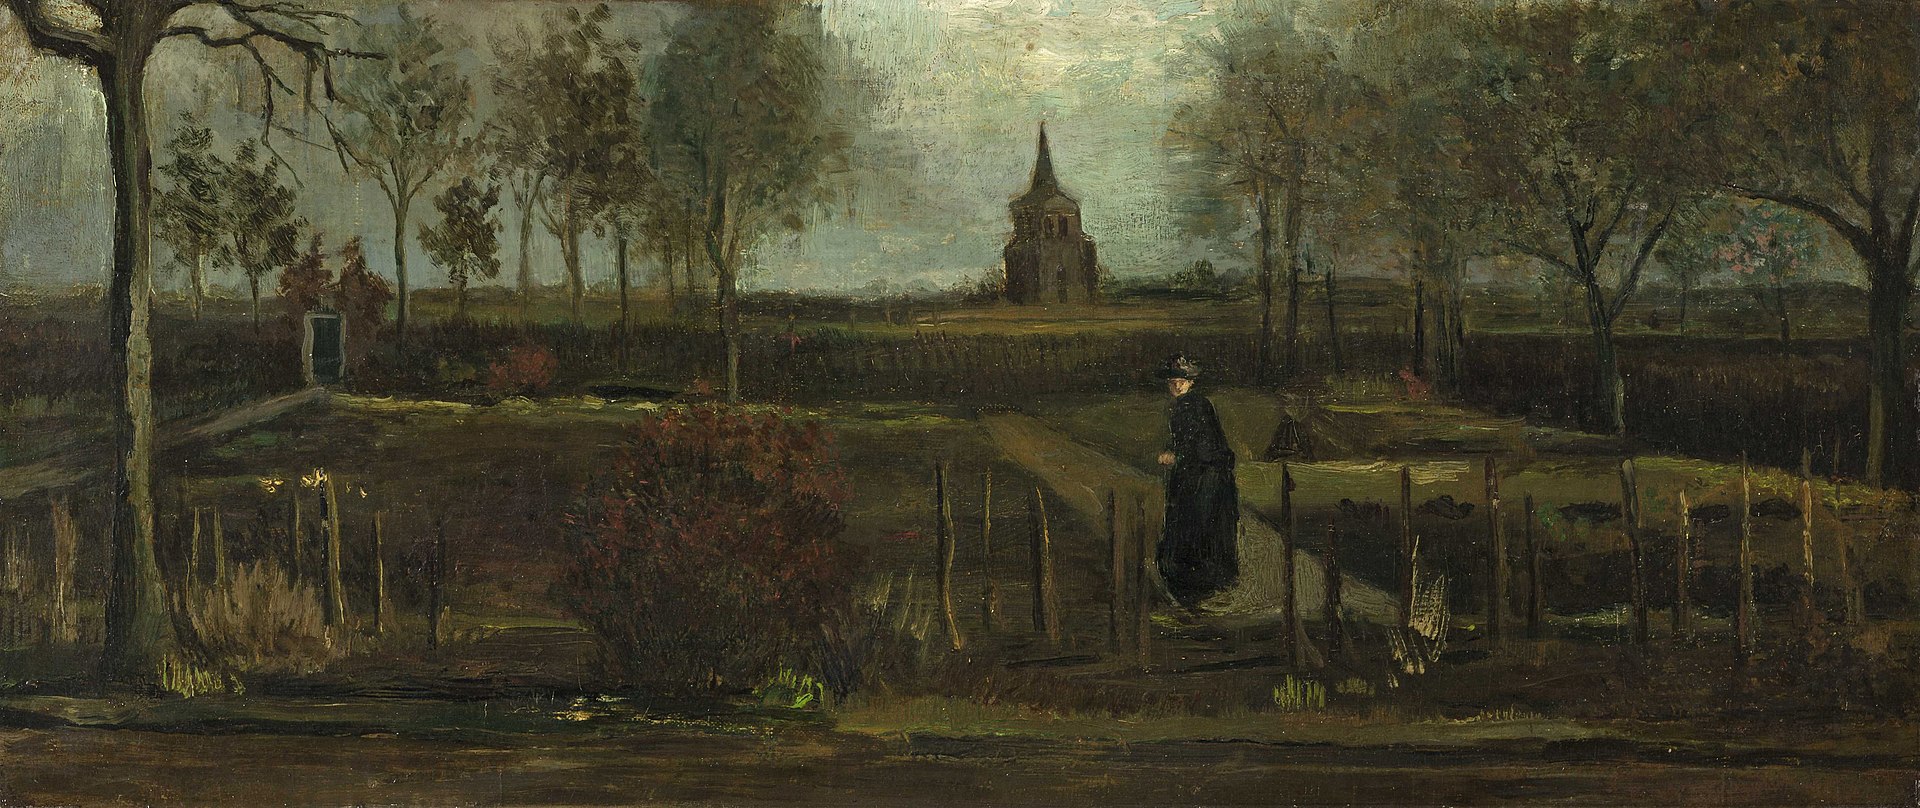 La Recuperación del "Jardín del Presbiterio de Nuenen en Primavera" de Van Gogh